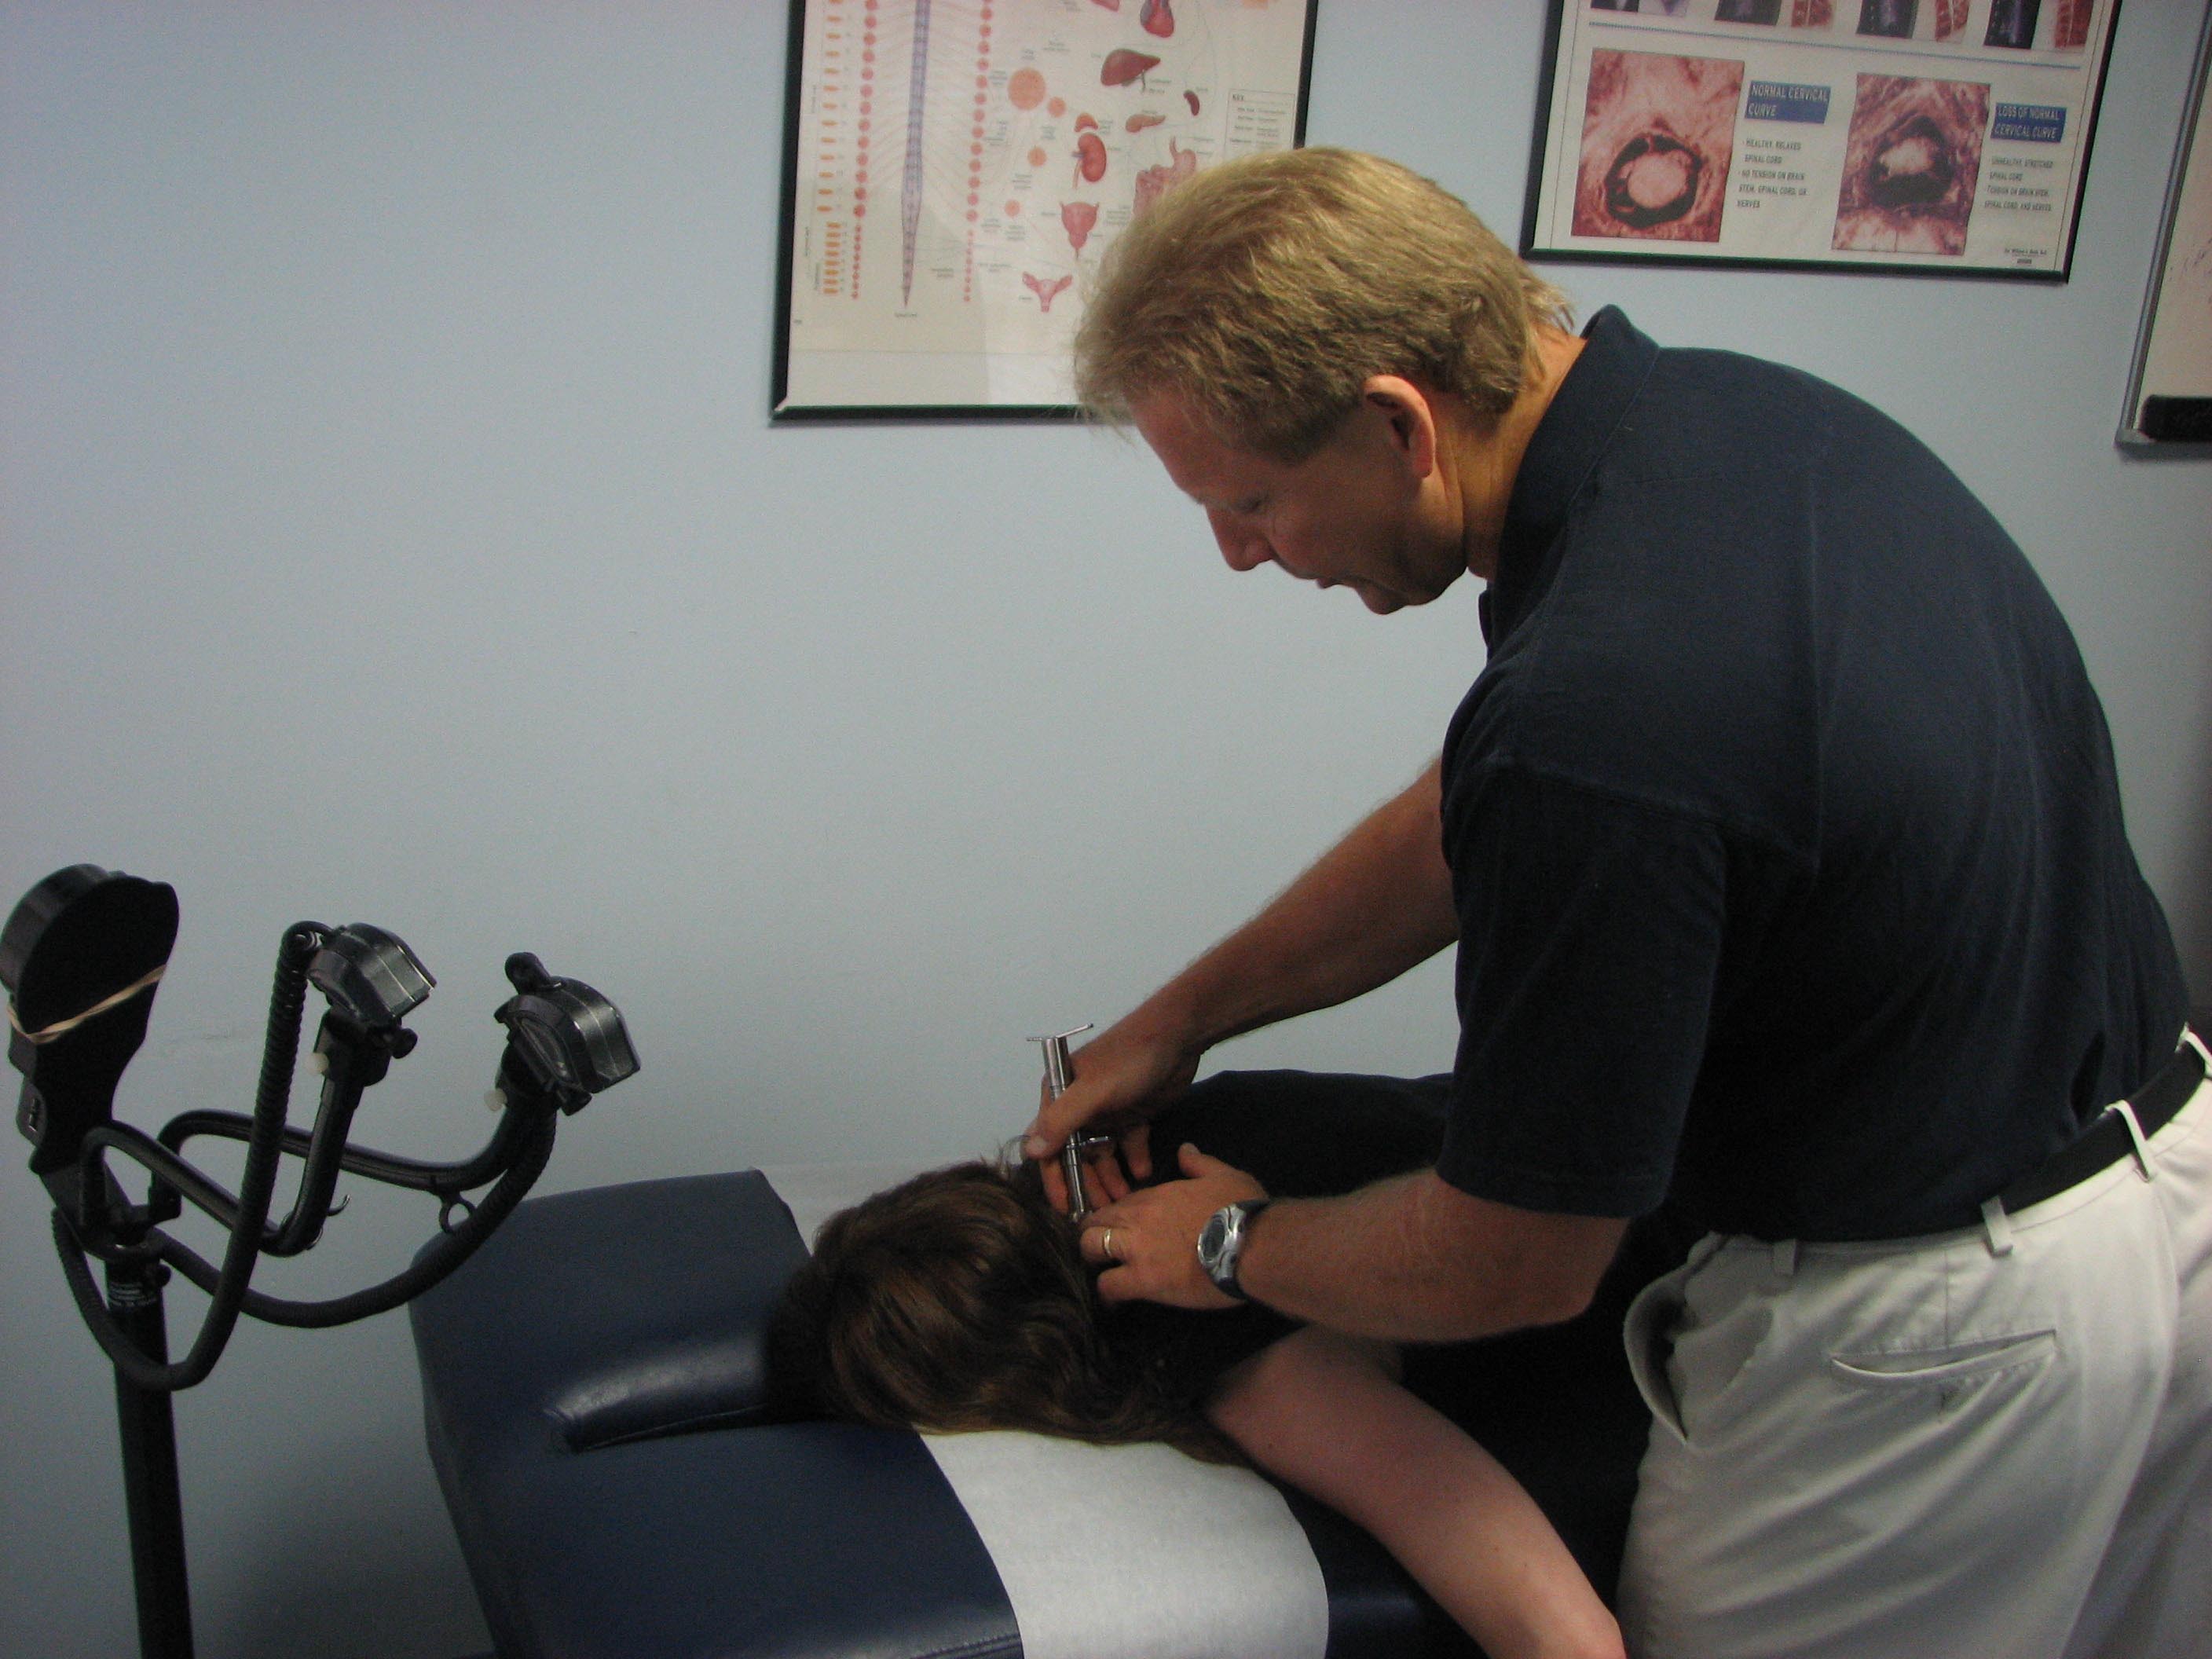 Dr. Paul Kastuk demonstrates the gentle chiropractic technique he uses that he said defies the misheld belief that chiropractors “crack backs.”